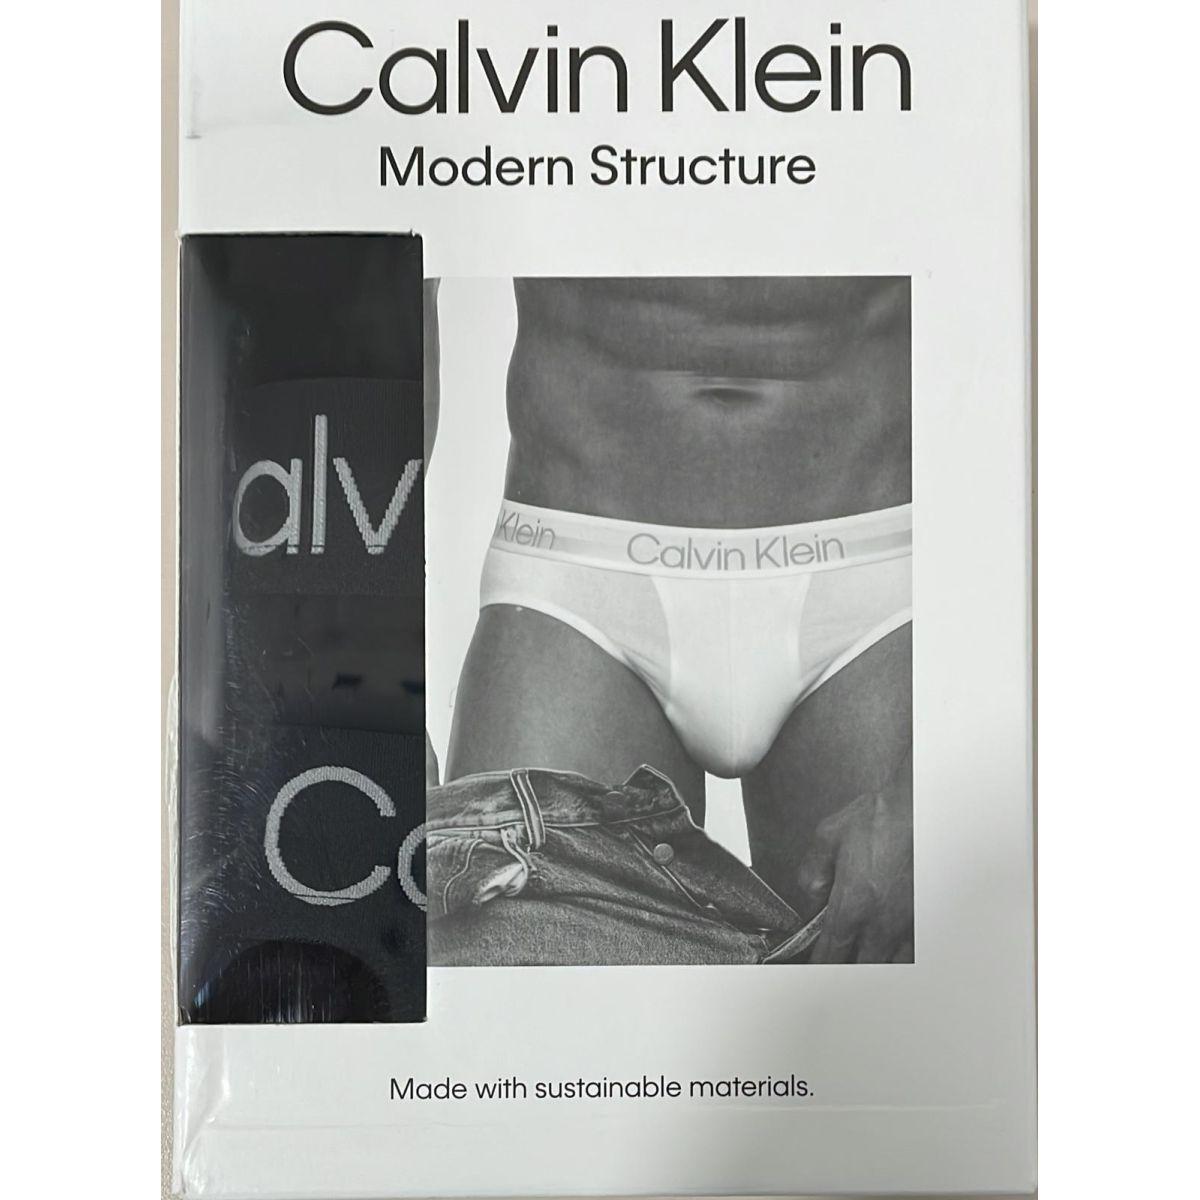 SG Slip uomo CK CALVIN KLEIN mutande confezione 3 capi cotone  elastiicizzato ela 